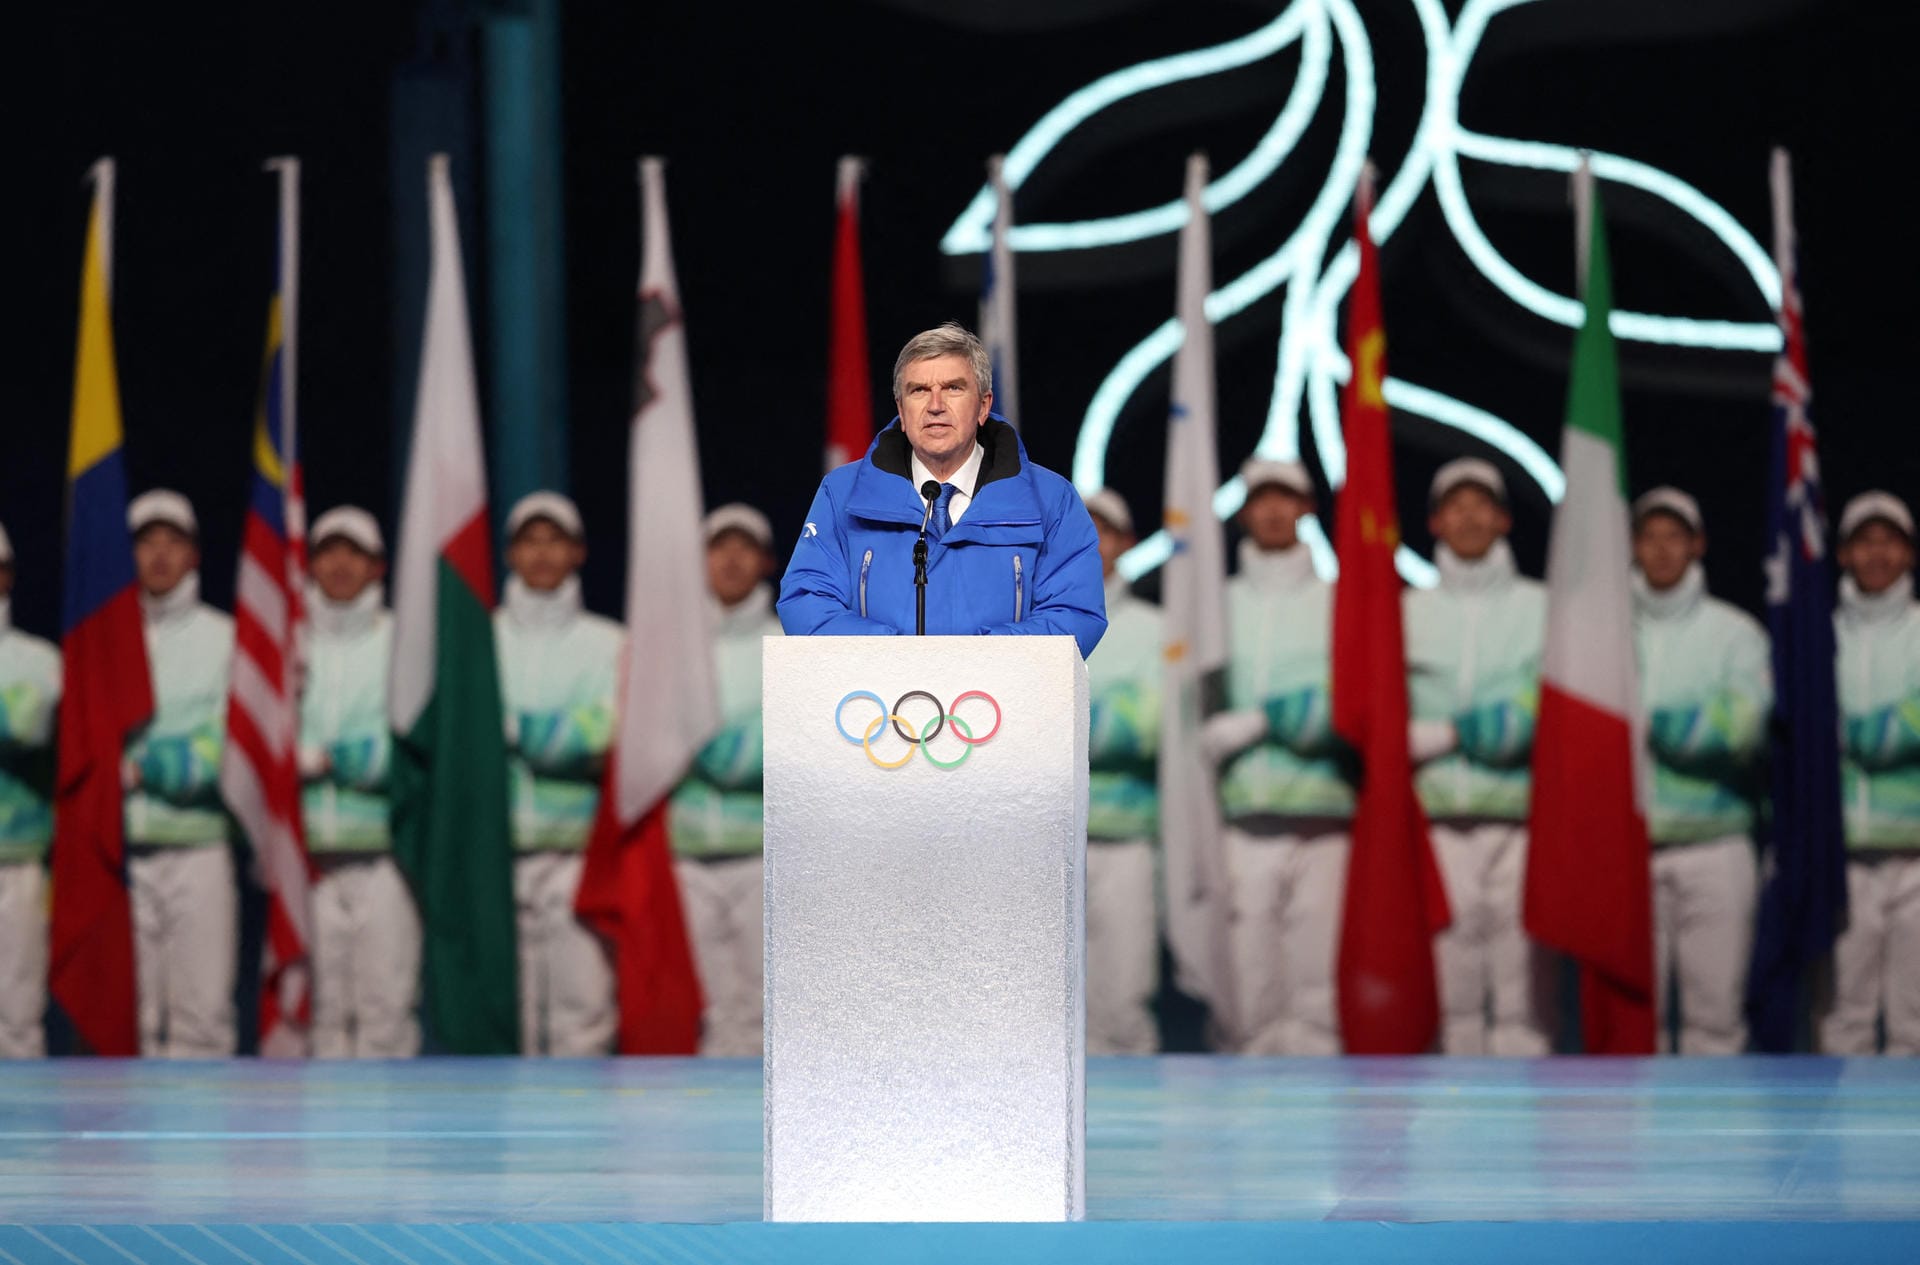 Thomas Bach: Der Präsident des IOC dankt in seiner Rede dem Gastgeberland und Chinas Präsident. Zudem erwähnt er die Leistung des medizinischen Personals weltweit, das in dieser Pandemie alles gibt.